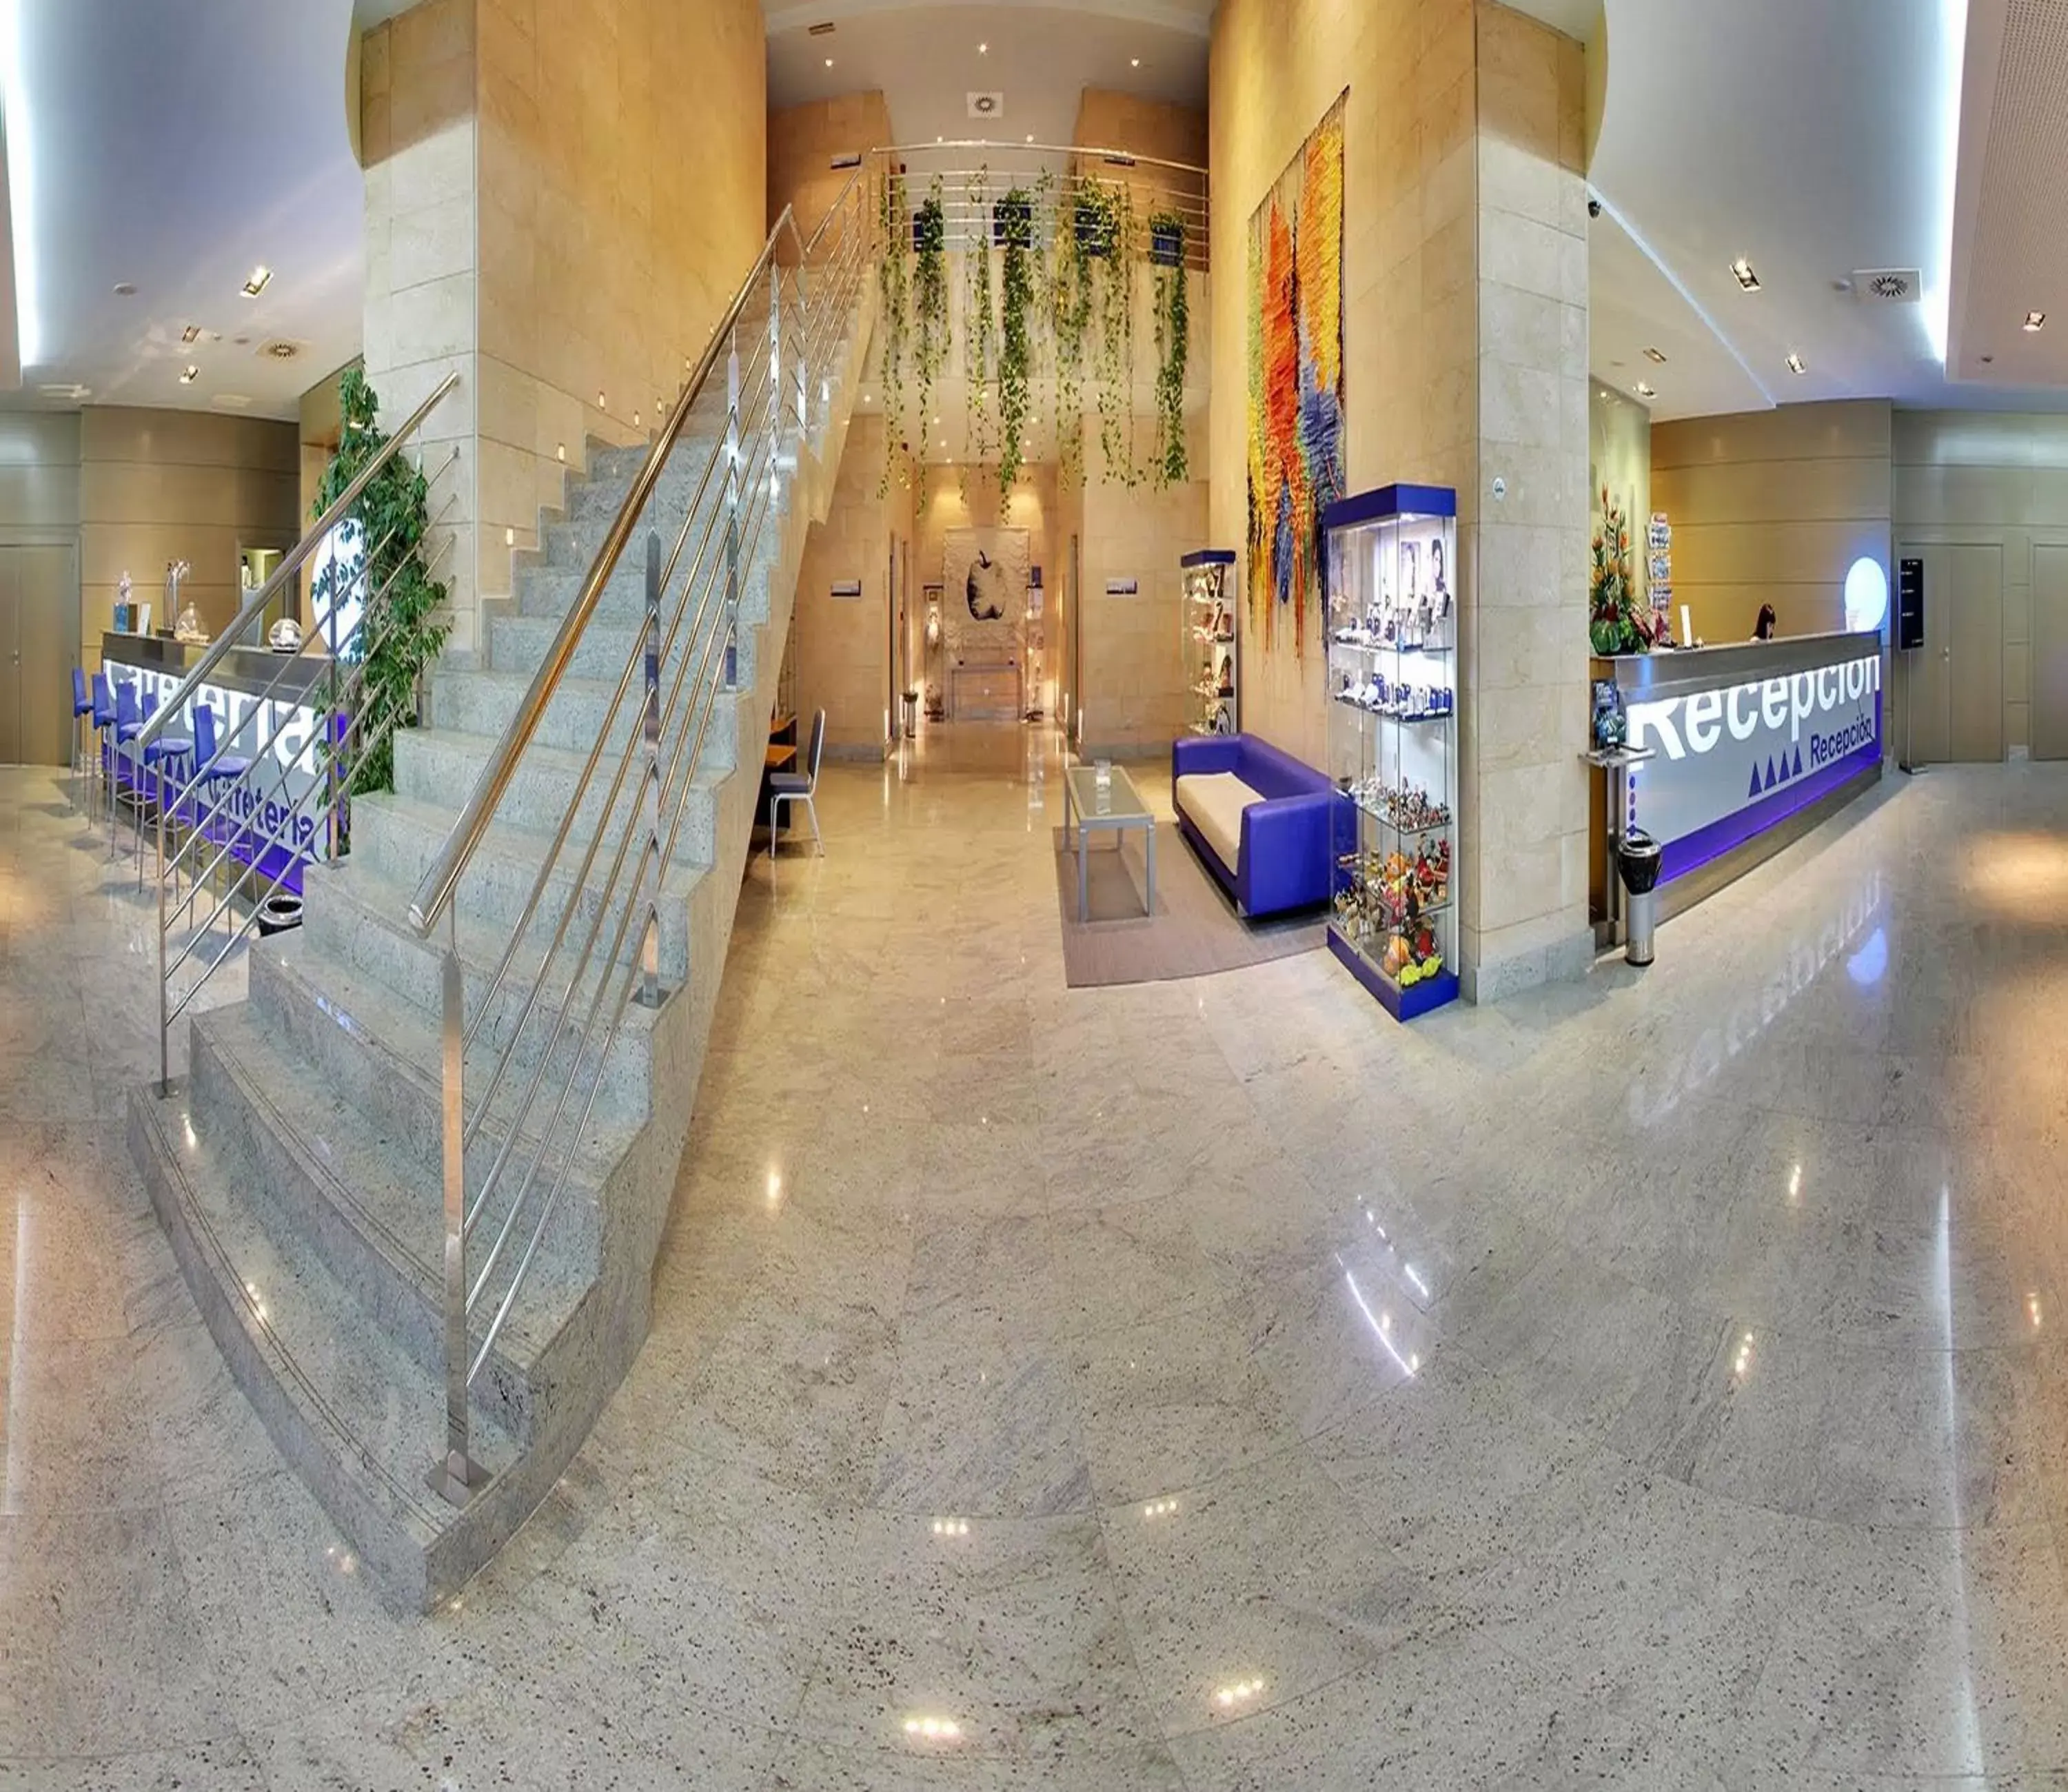 Lobby or reception in Hotel Mas Camarena